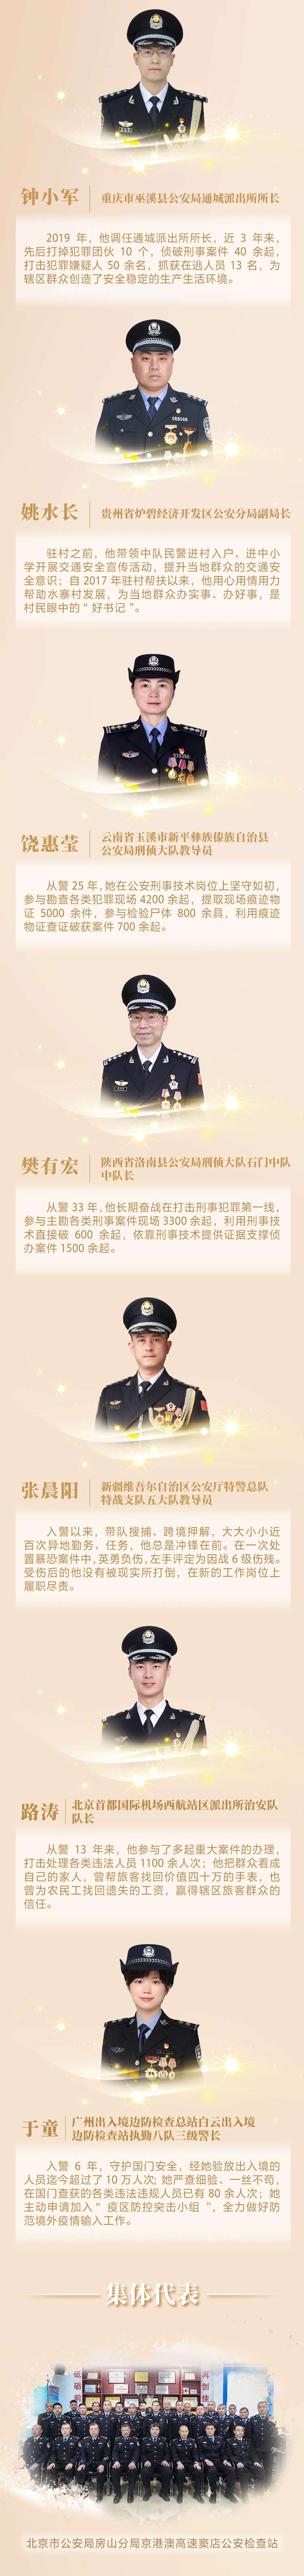 人民网-中国共产党新闻网2-3.jpg